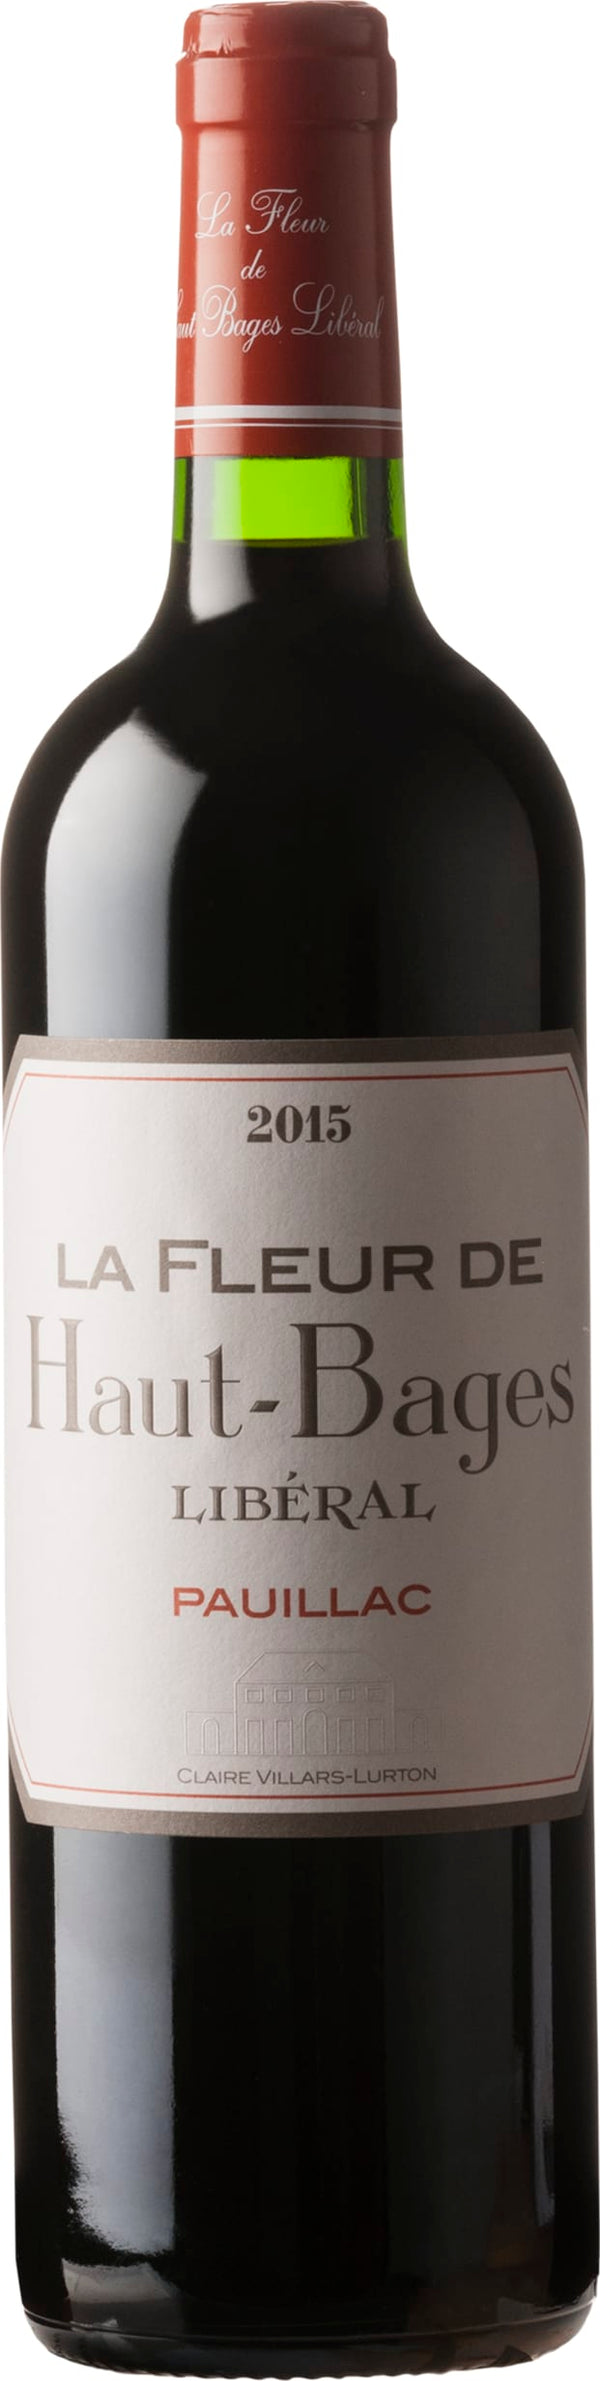 Chateau Haut-Bages Liberal Pauillac, La Fleur de Haut-Bages Liberal 2016 6x75cl - Just Wines 